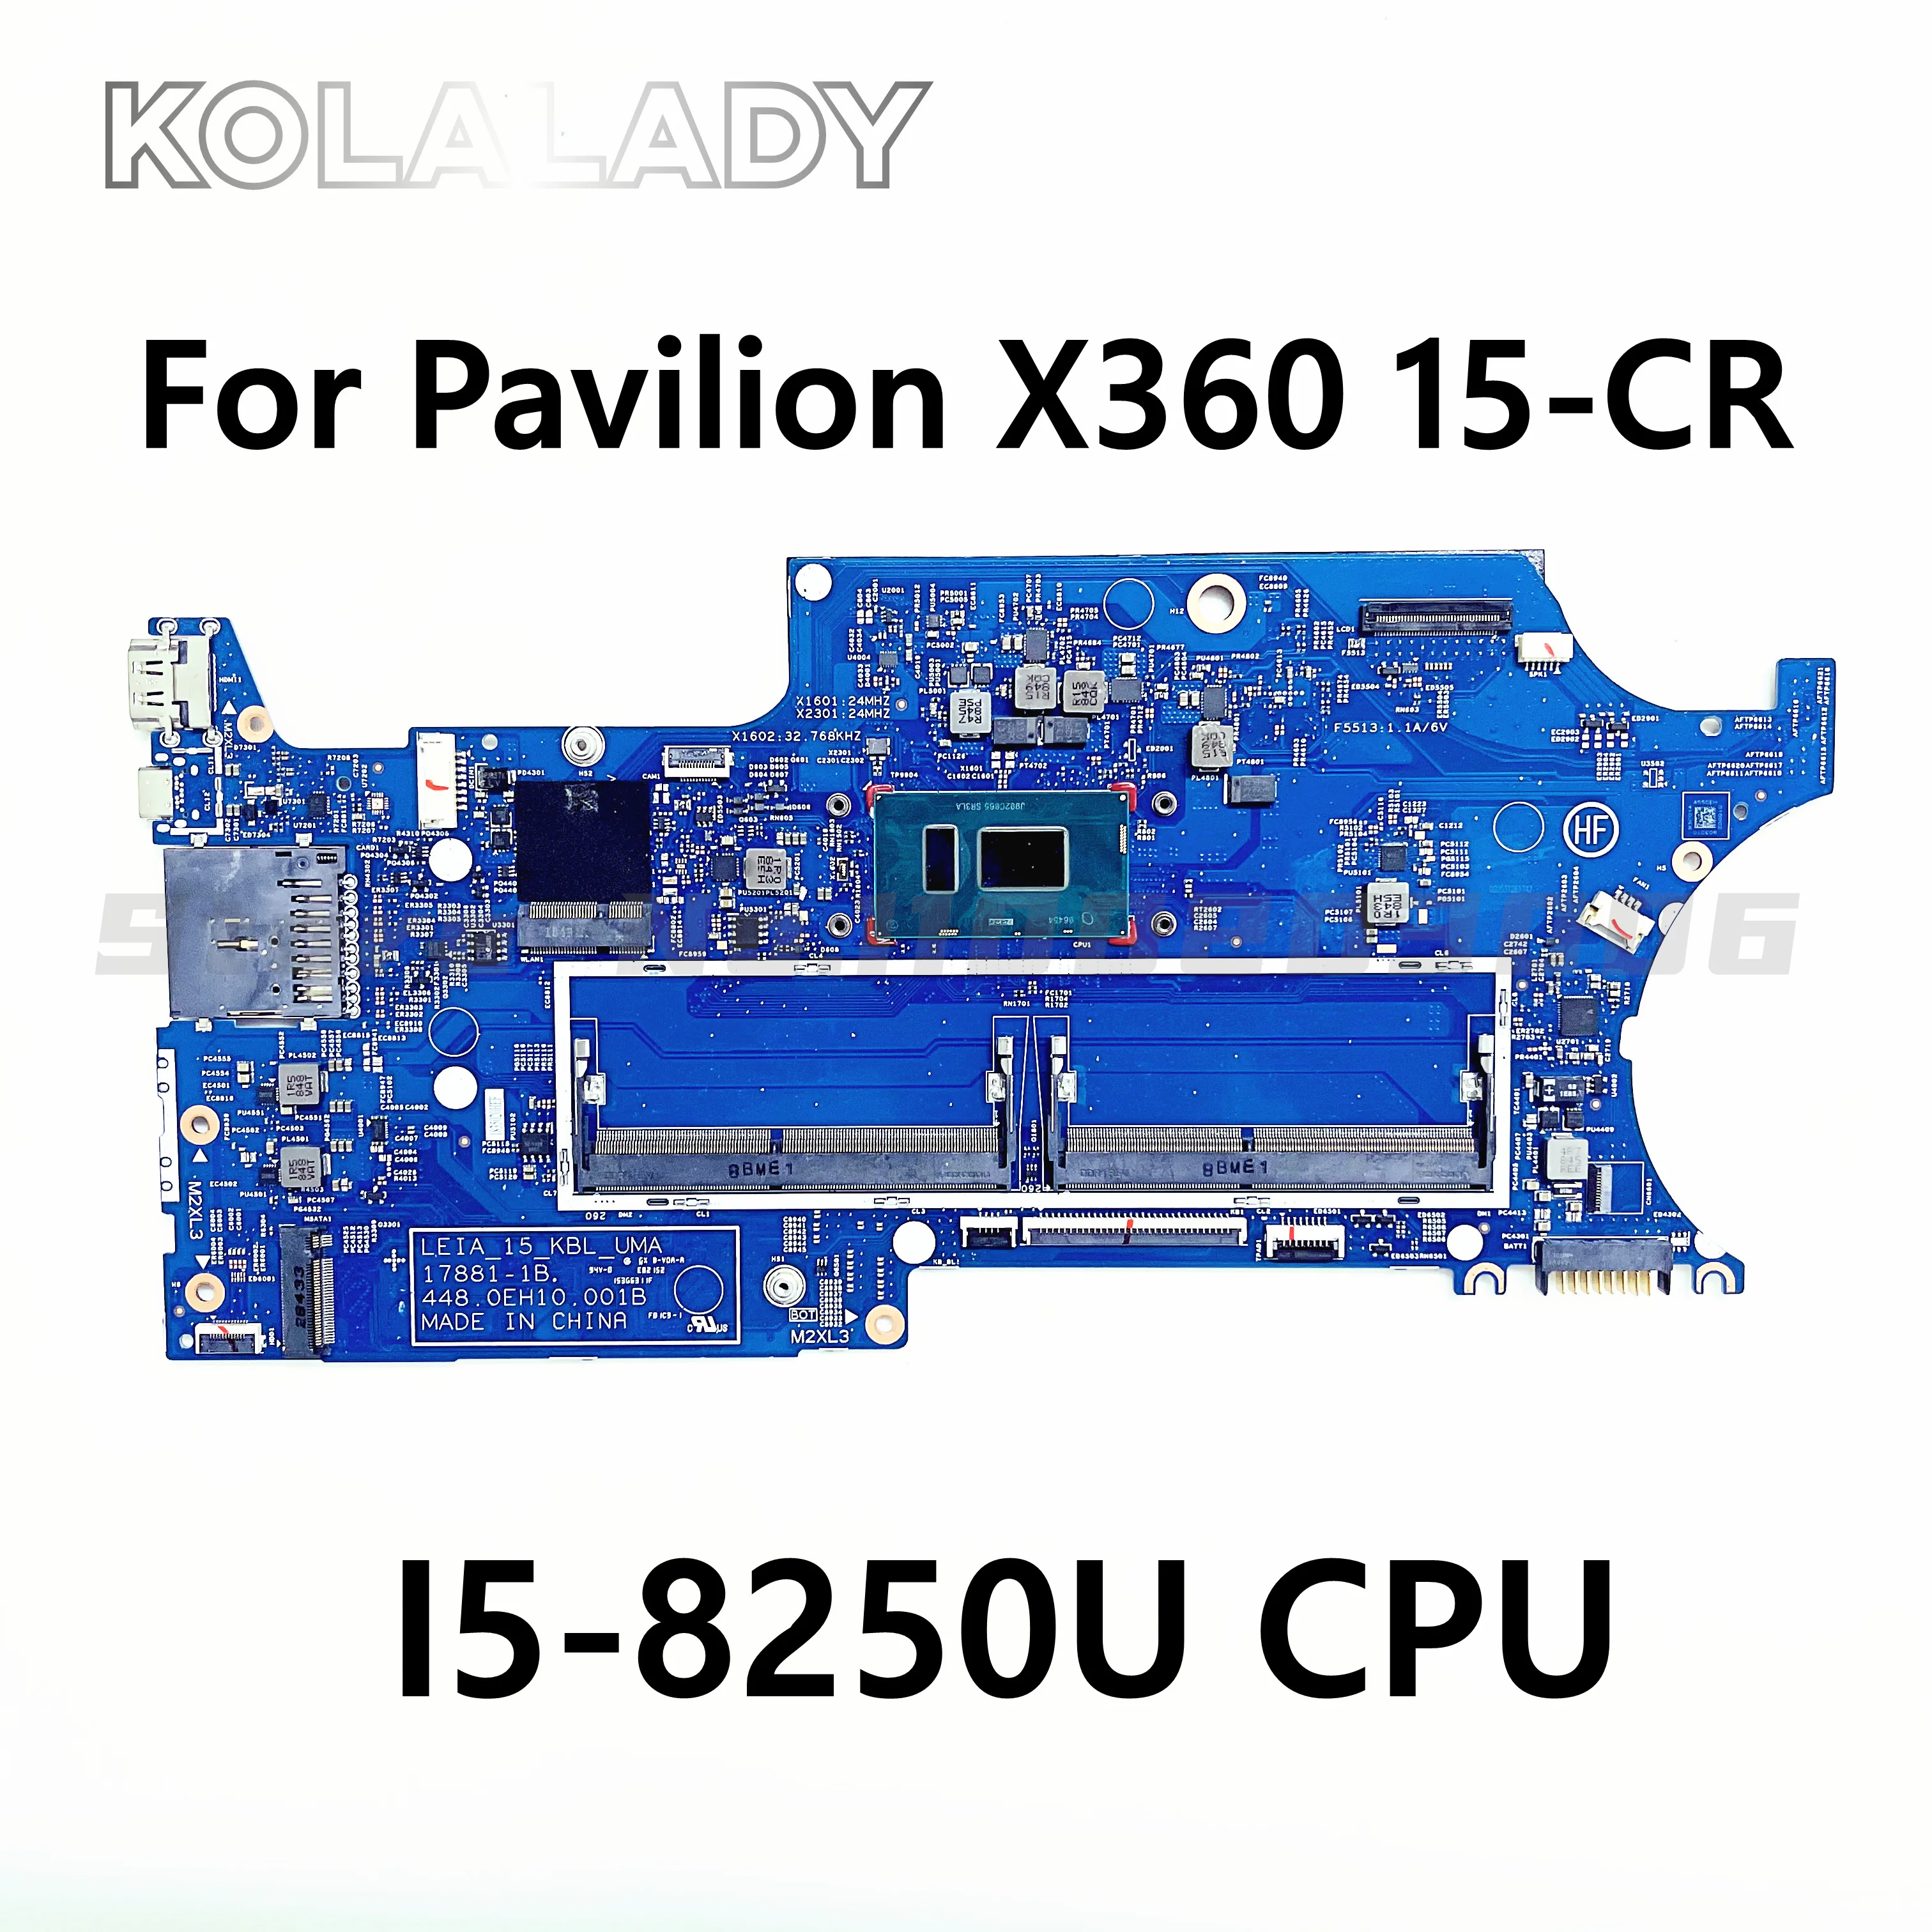 עבור HP Pavilion X360 15-CR 15-CR0053WM מחשב נייד לוח אם L20844-601 I5-8250U CPU 17881-1B 448.0EH10.001B DDR4 100% נבדק - 0